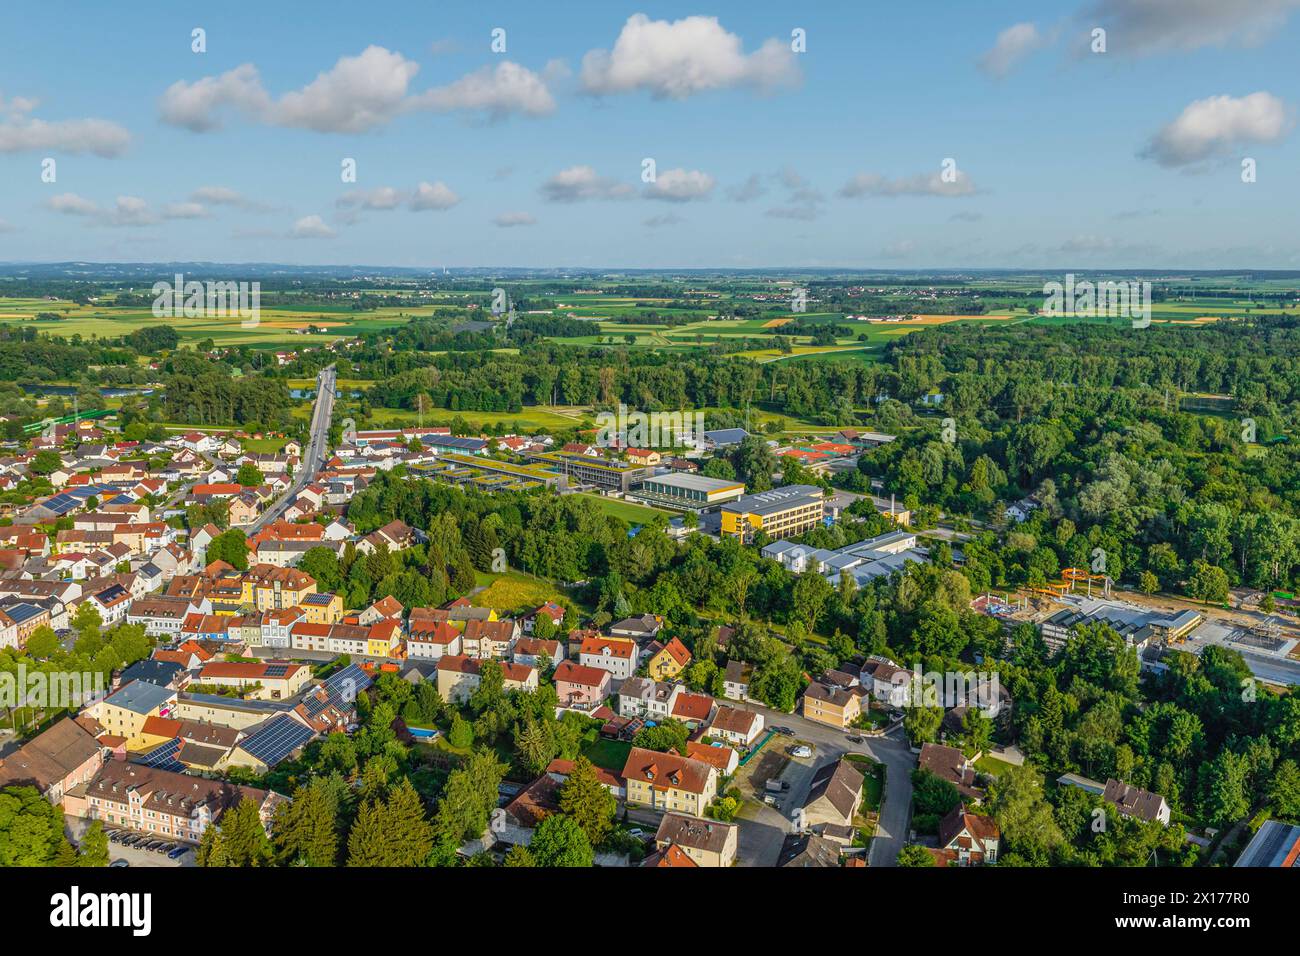 Die Stadt Plattling im Gäuboden in der niederbayerischen Region Donau-Wald im Luftbild Ausblick auf Plattling an der Isar in Niederbayern an einem son Banque D'Images